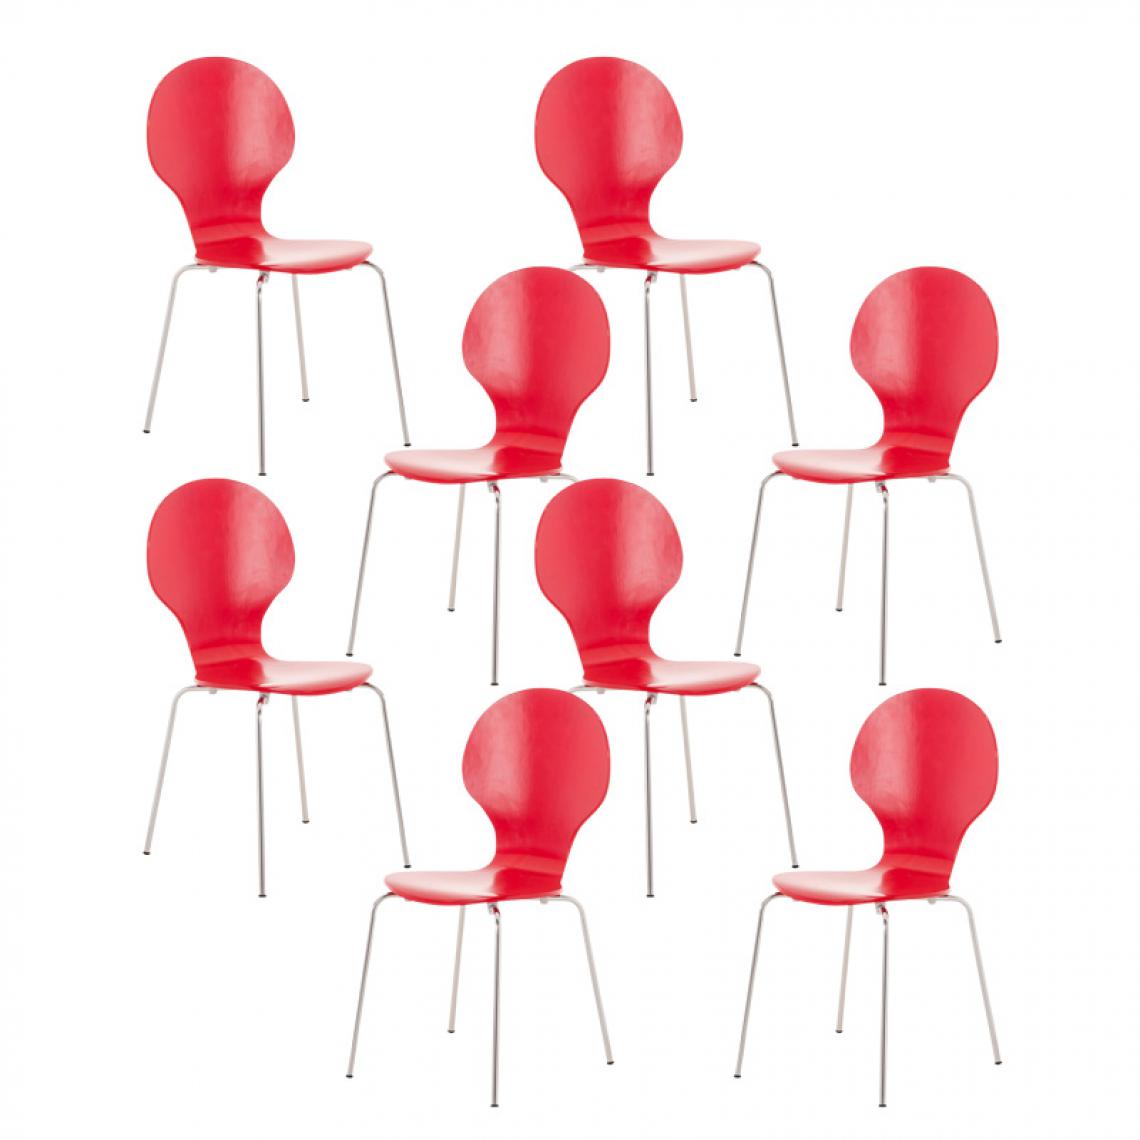 Icaverne - Contemporain Lot de 8 chaises visiteurs Vaduz couleur rouge - Chaises